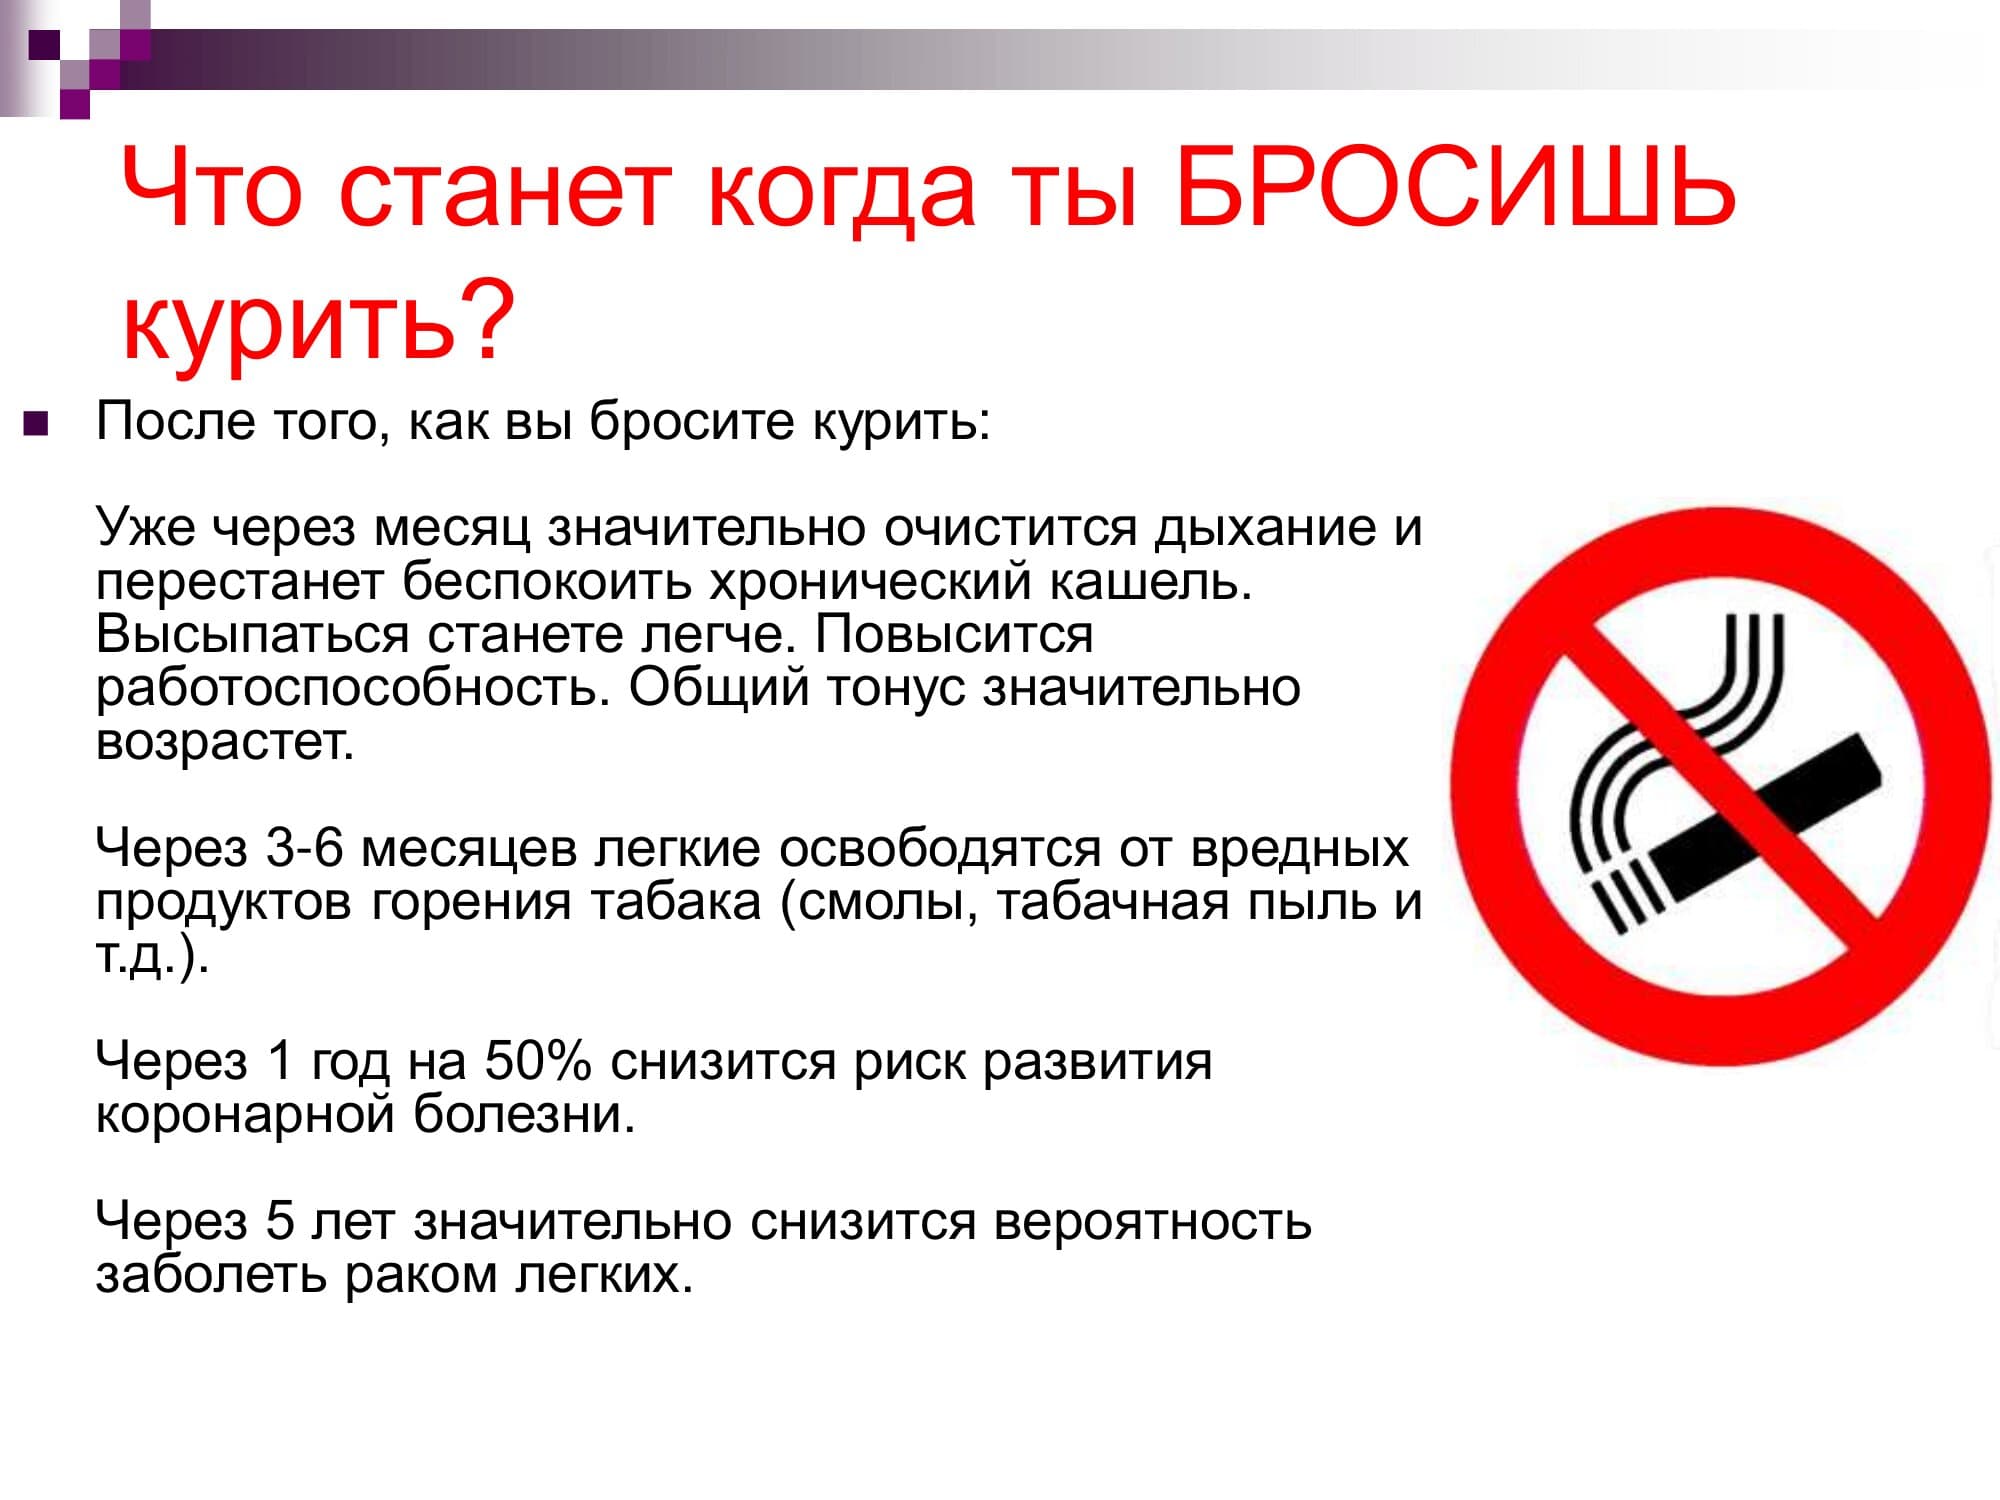 Специалист бросить курить. Рекомендации бросить курить. Бросайте курить. Когда бросаешь курить. Брось курить.